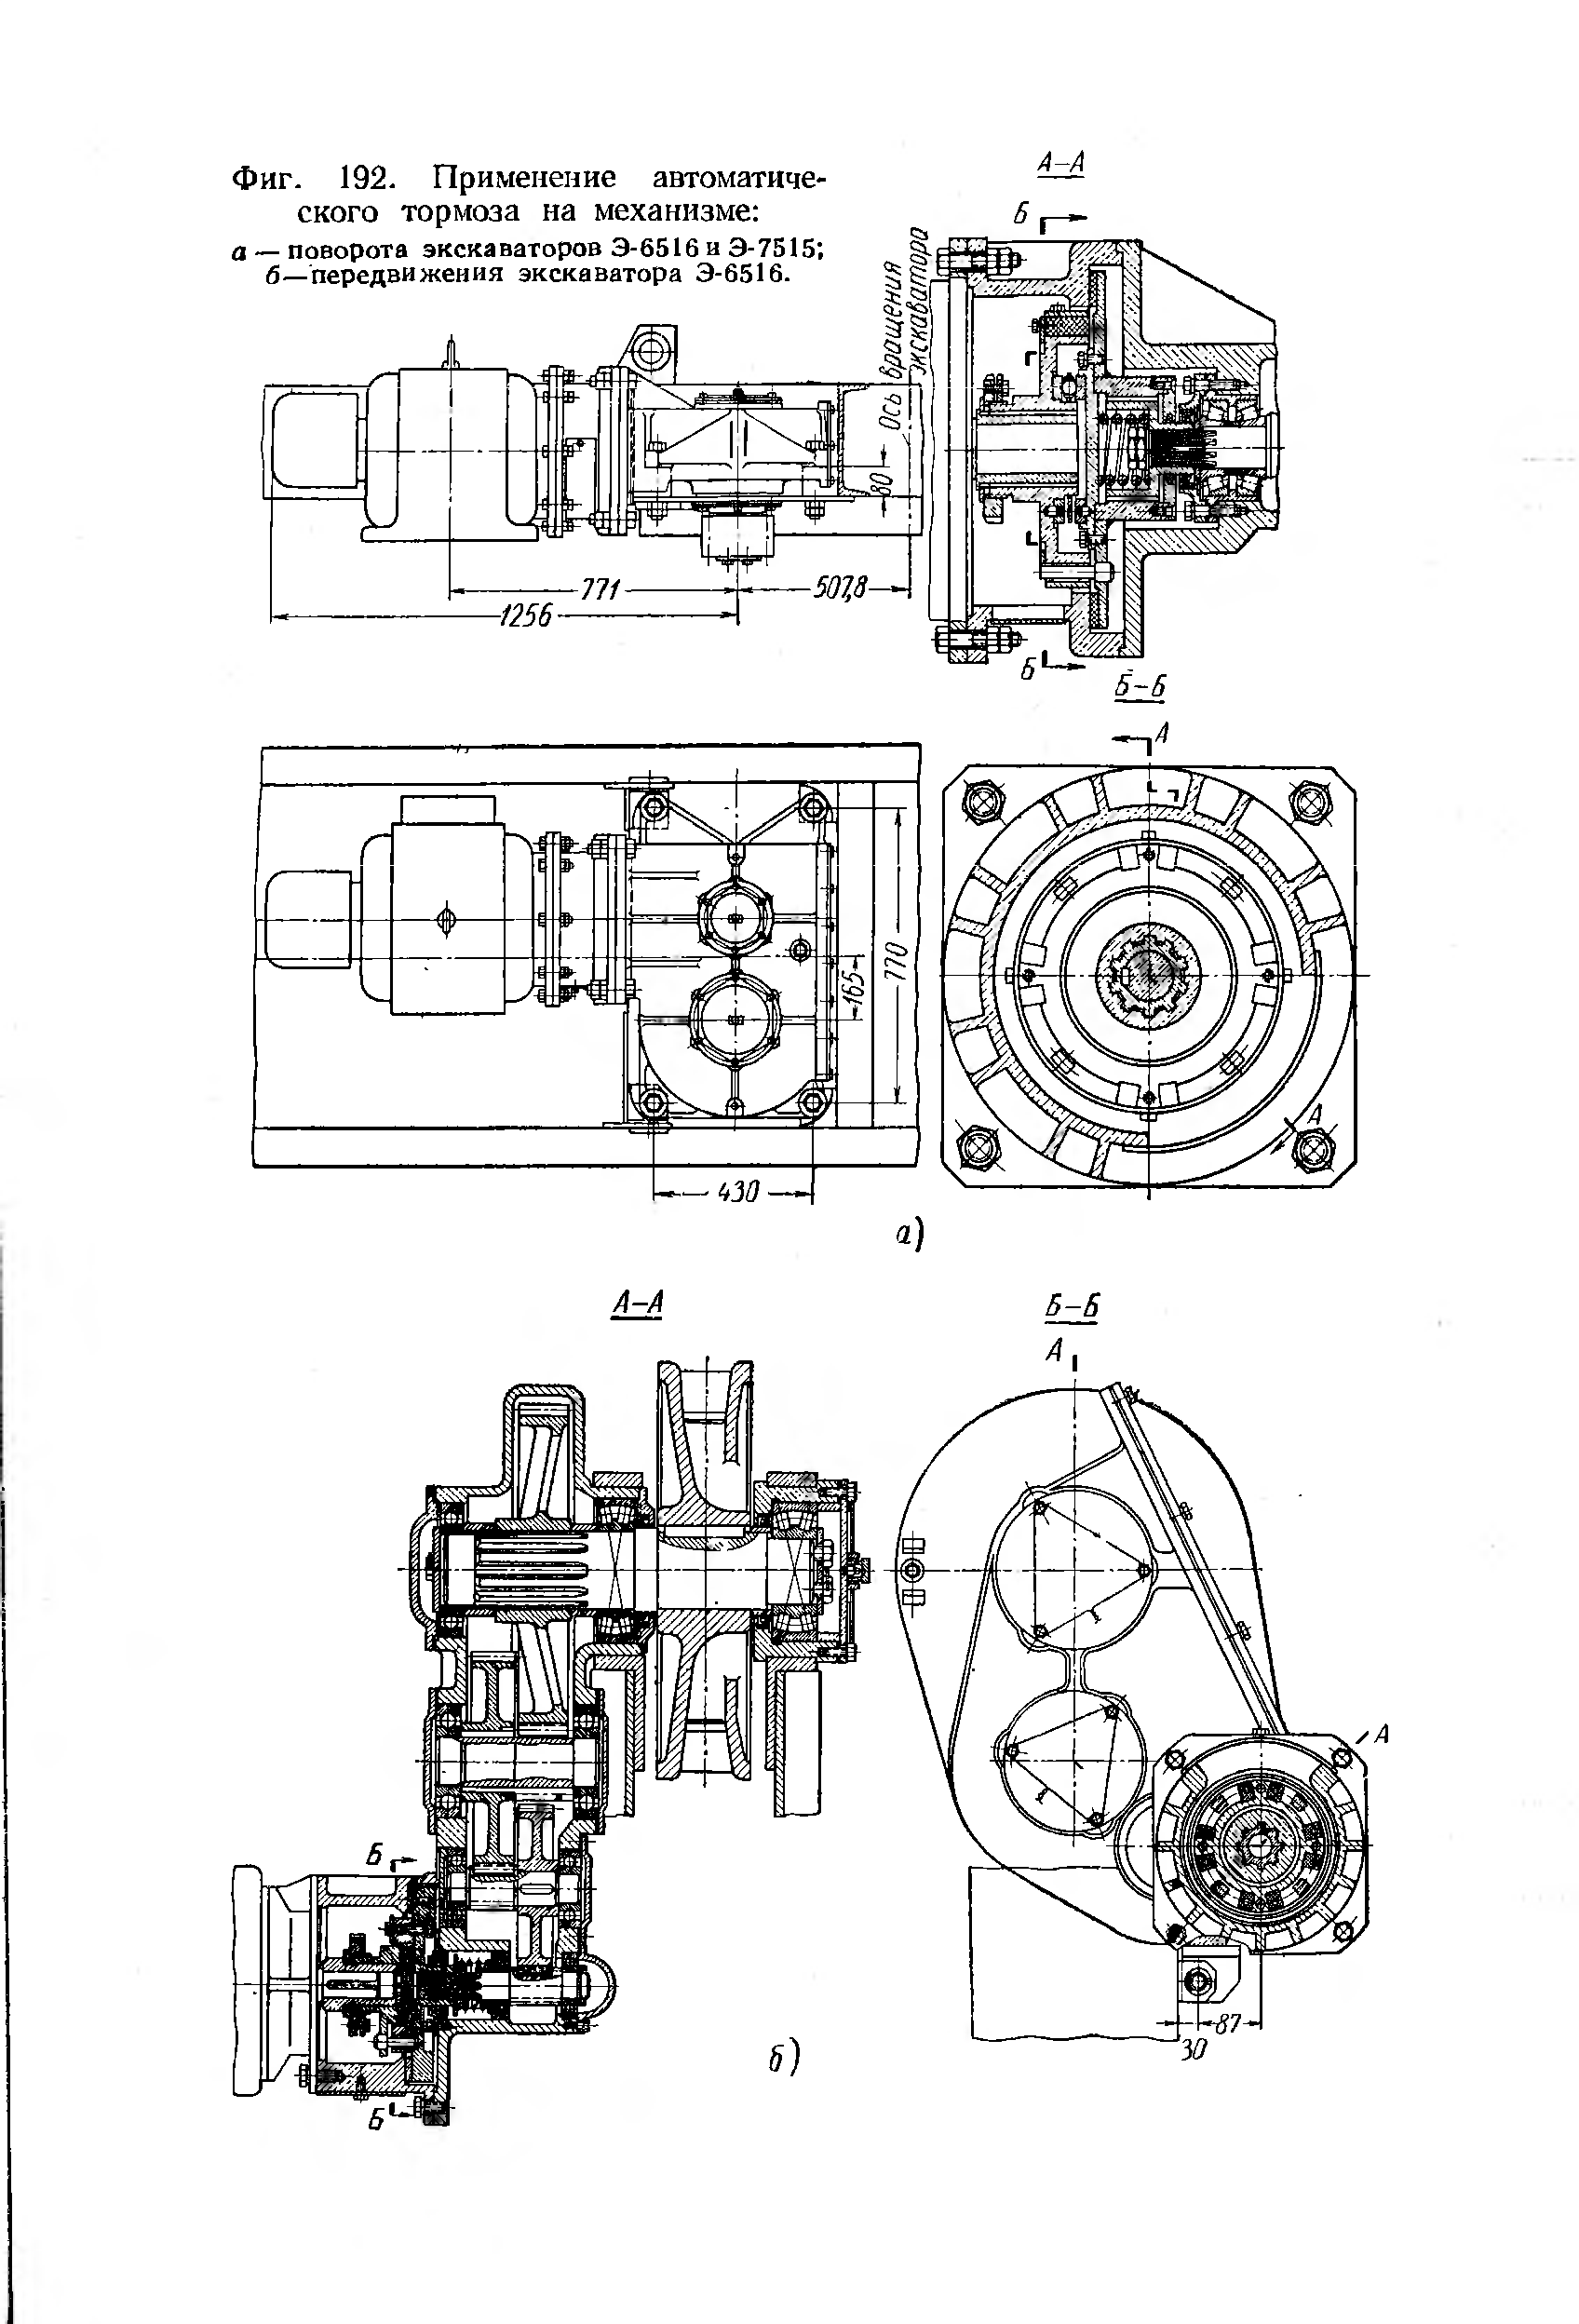 Фиг. 192. Применение автоматического тормоза на механизме а — поворота экскаваторов Э-6516 и Э-7515 б—передвижения экскаватора Э-6516.
